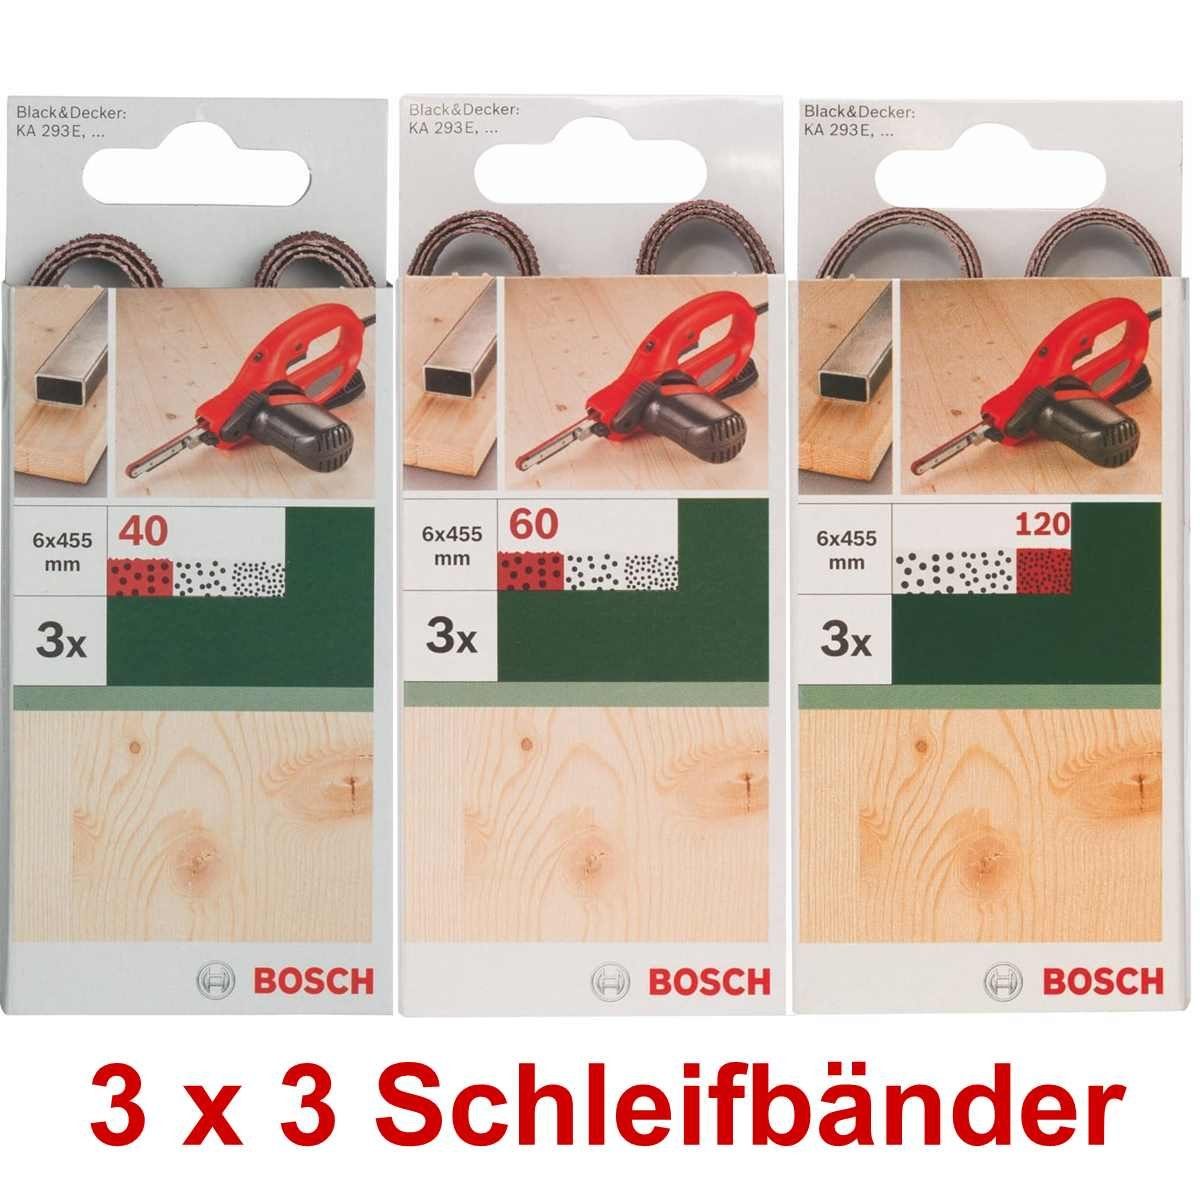 BOSCH Bohrfutter Bosch 3 x 3 Schleifbänder für B+D Powerfile KA 293E 6 x 451 mm, 40,60